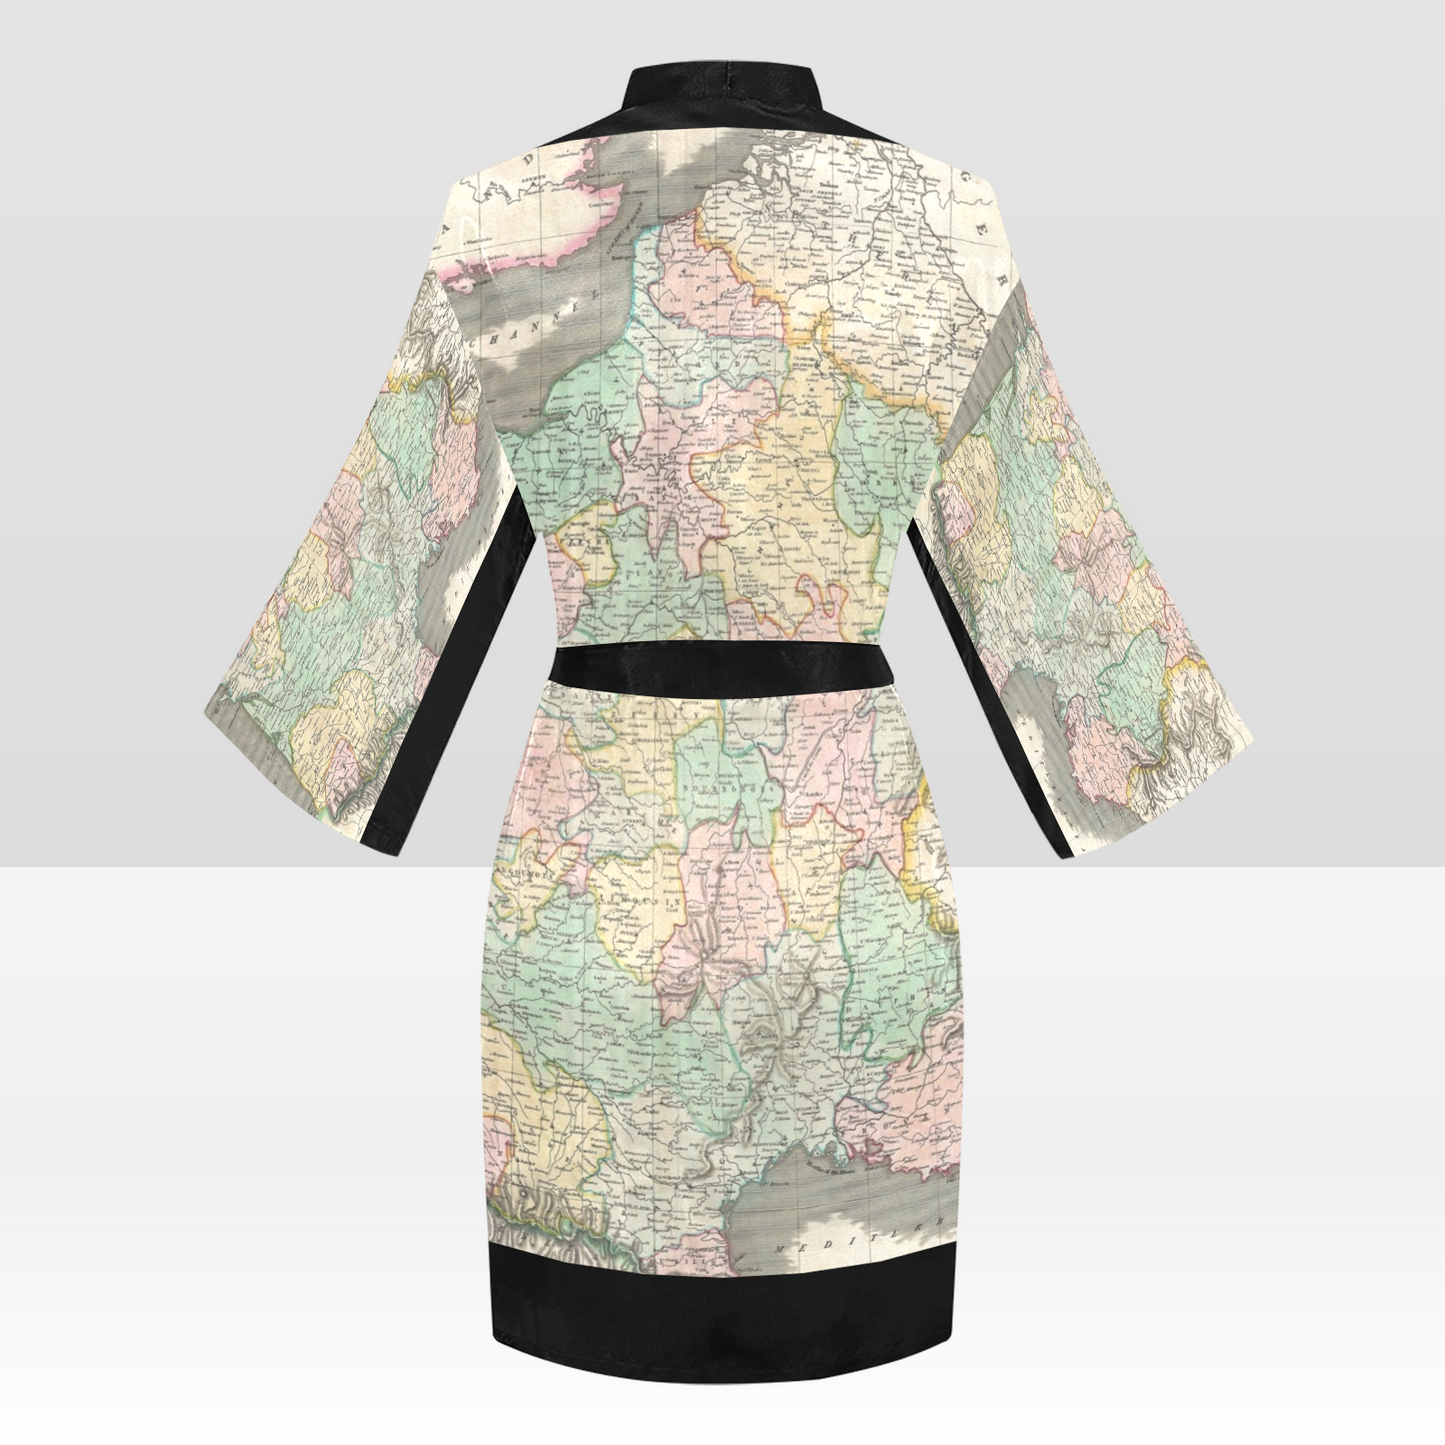 Antique Map Kimono Robe, Black or White Trim, Sizes XS to 2XL, Design 39